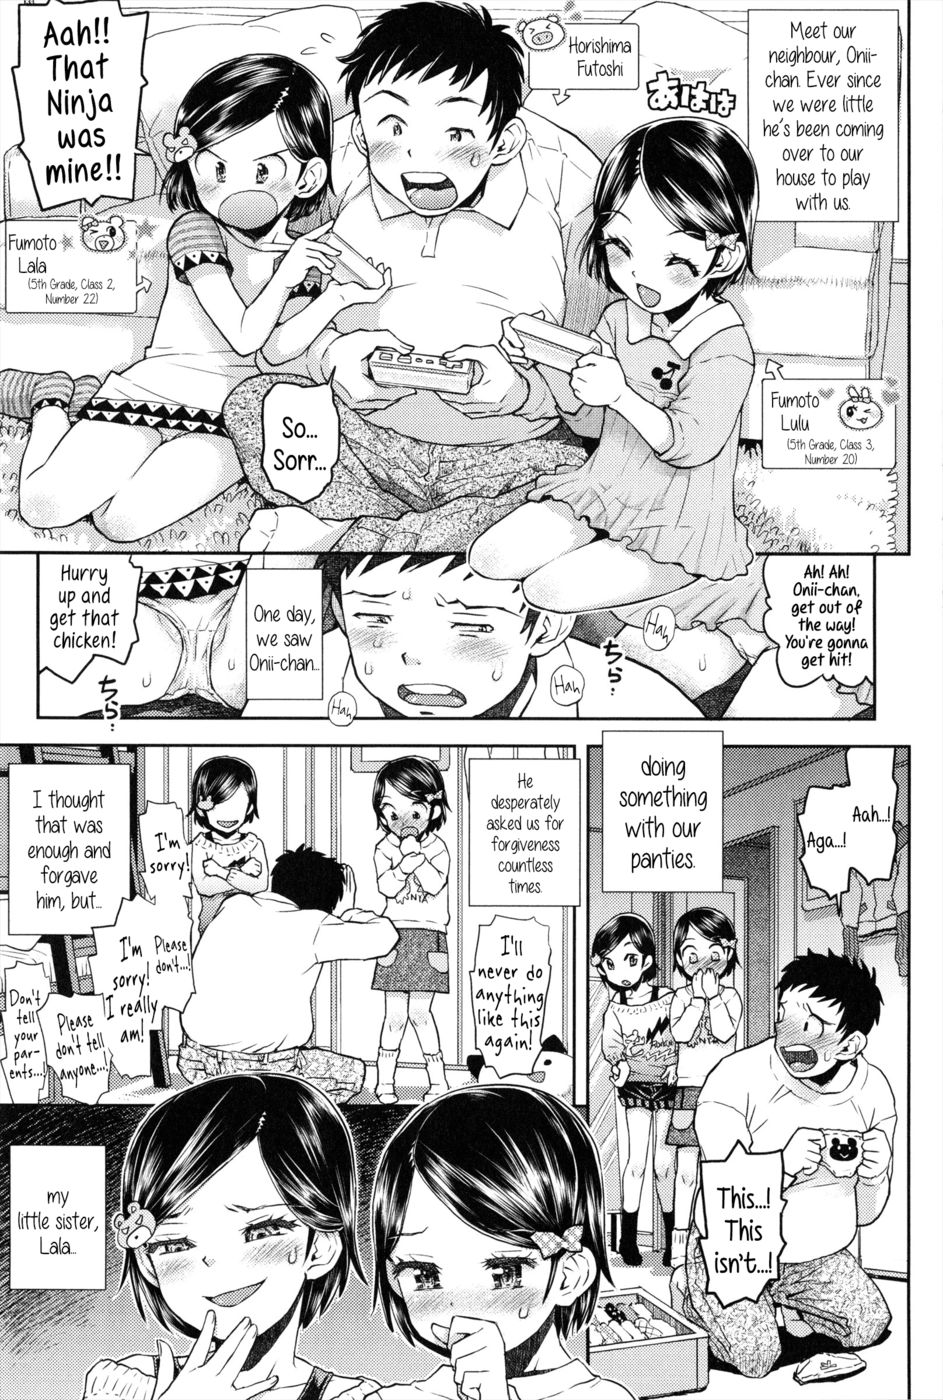 Hentai Manga Comic-Lulalula Room-Chapter 1 - 2 - 3-1